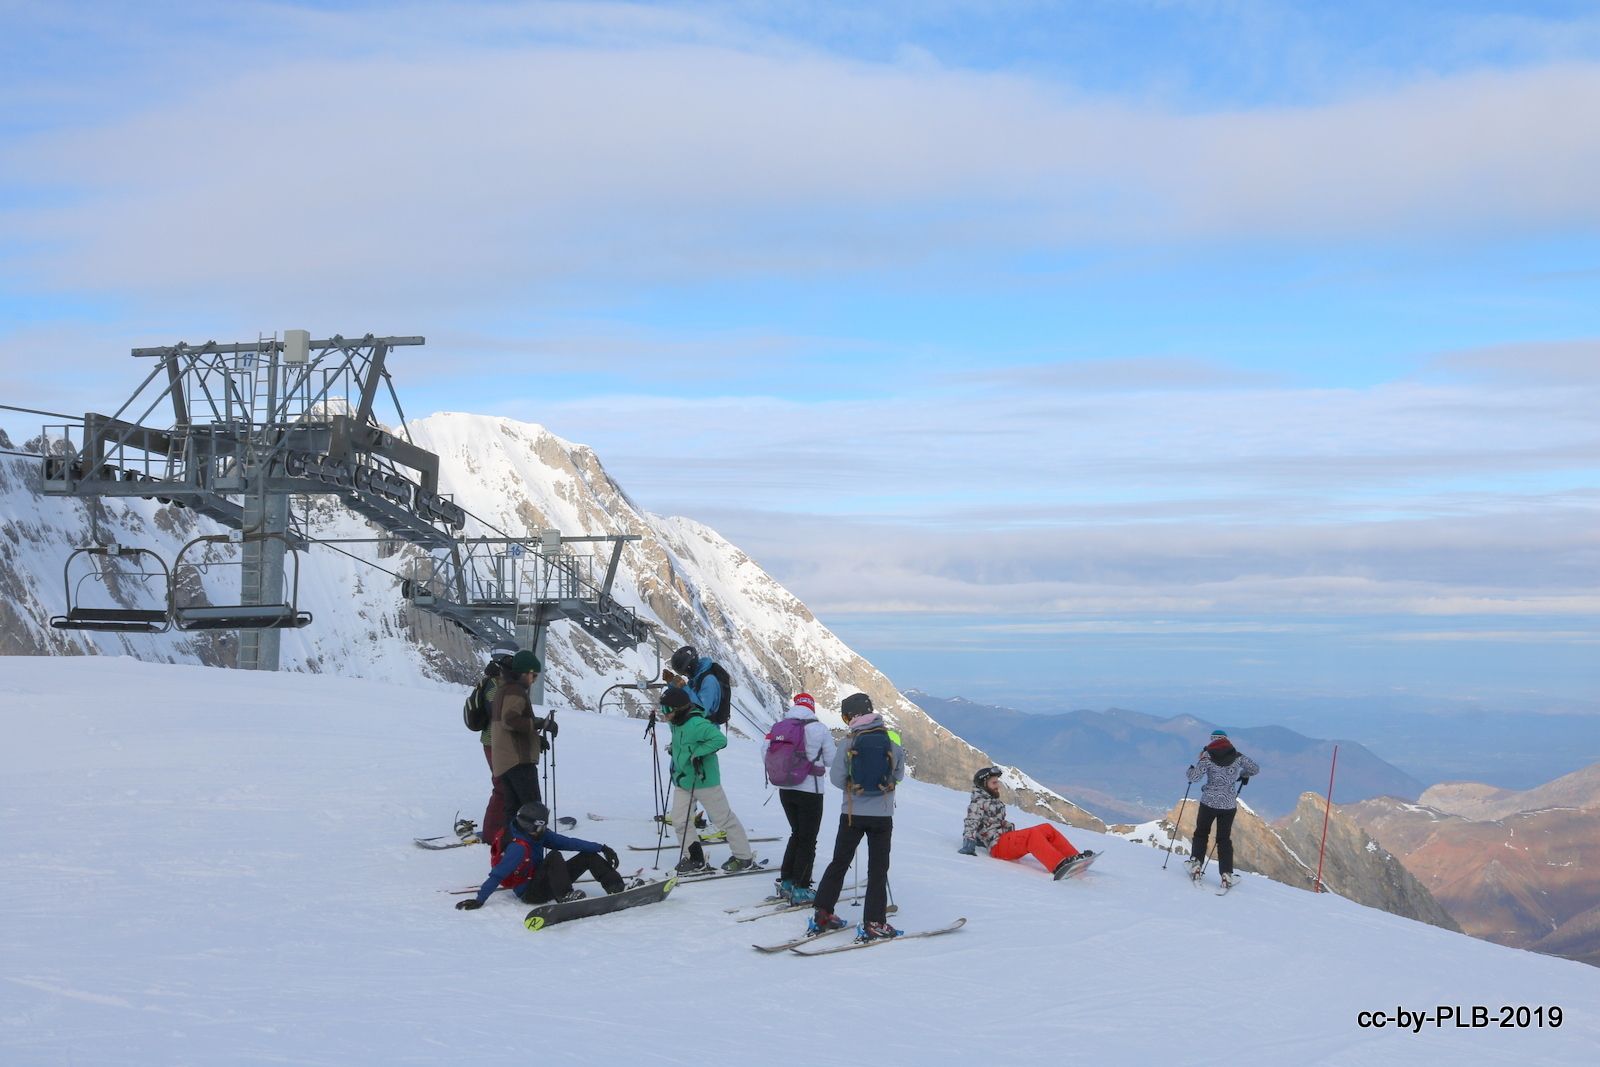  Puente de la Inmaculada de gastro-esquí en Gourette